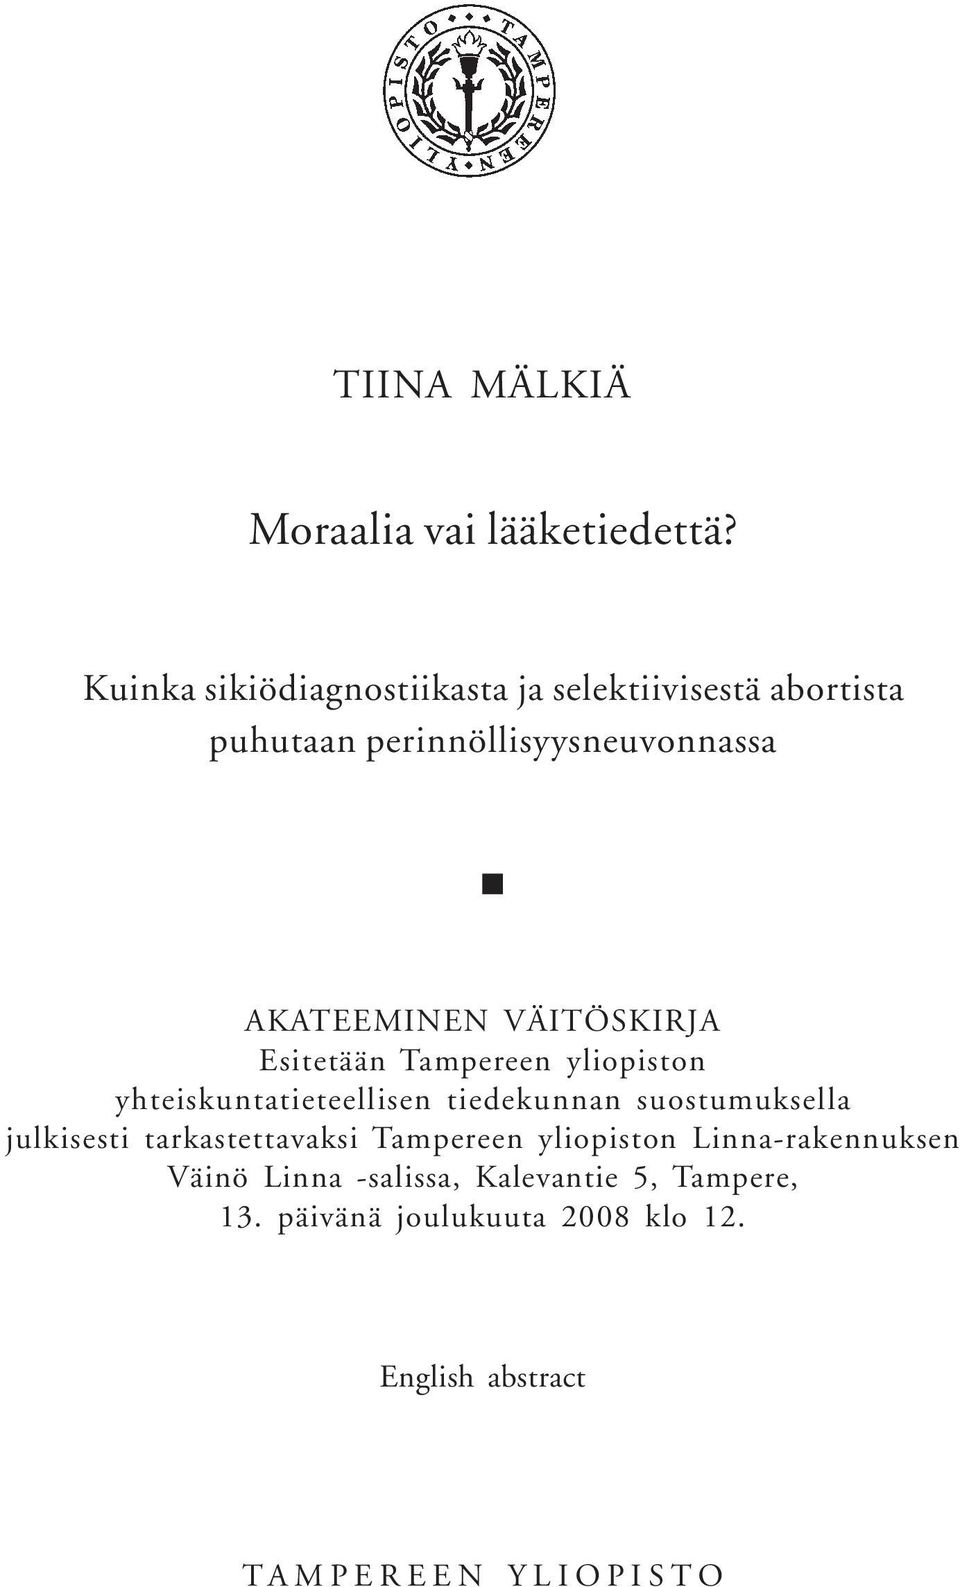 VÄITÖSKIRJA Esitetään Tampereen yliopiston yhteiskuntatieteellisen tiedekunnan suostumuksella julkisesti